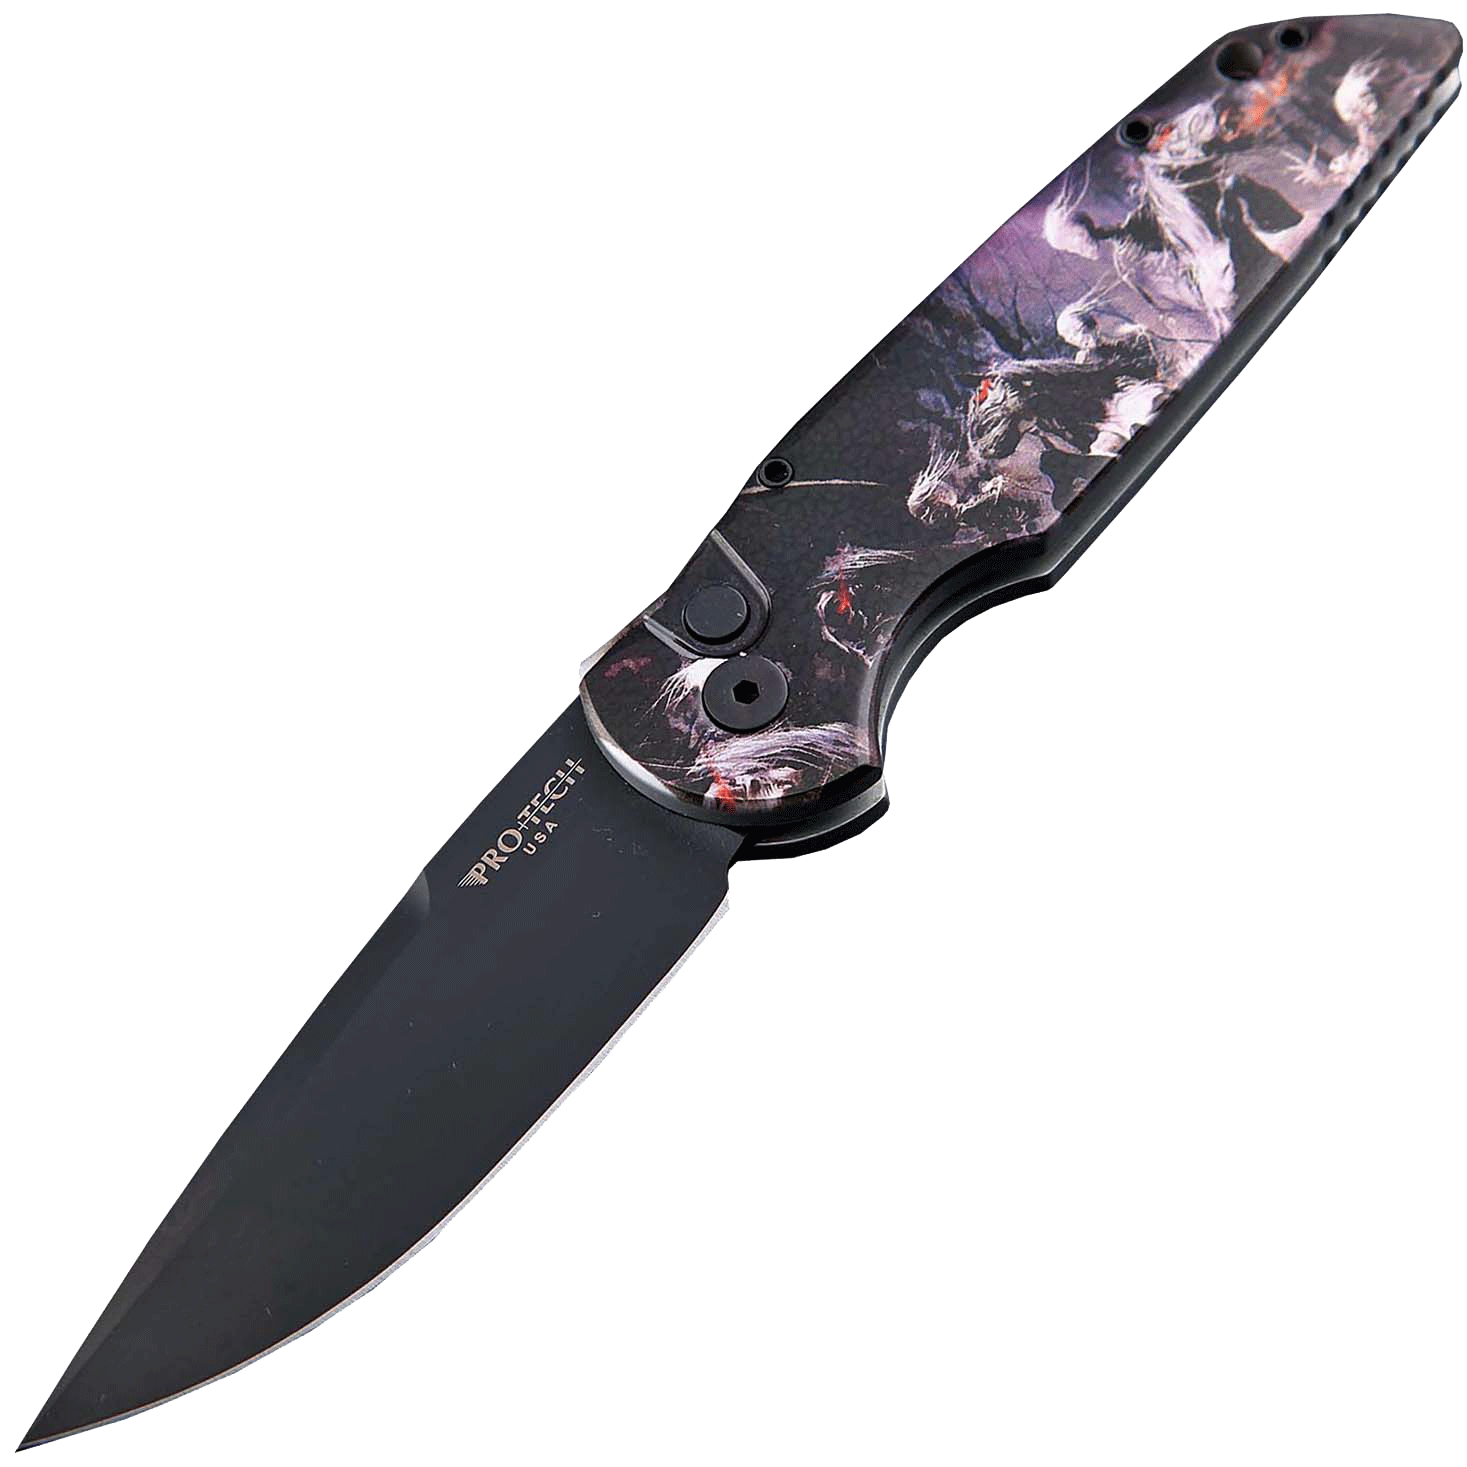 фото Автоматический складной нож pro-tech tr-3 limited, клинок черный, сталь 154cm, рукоять алюминий, рисунок скелеты всадников